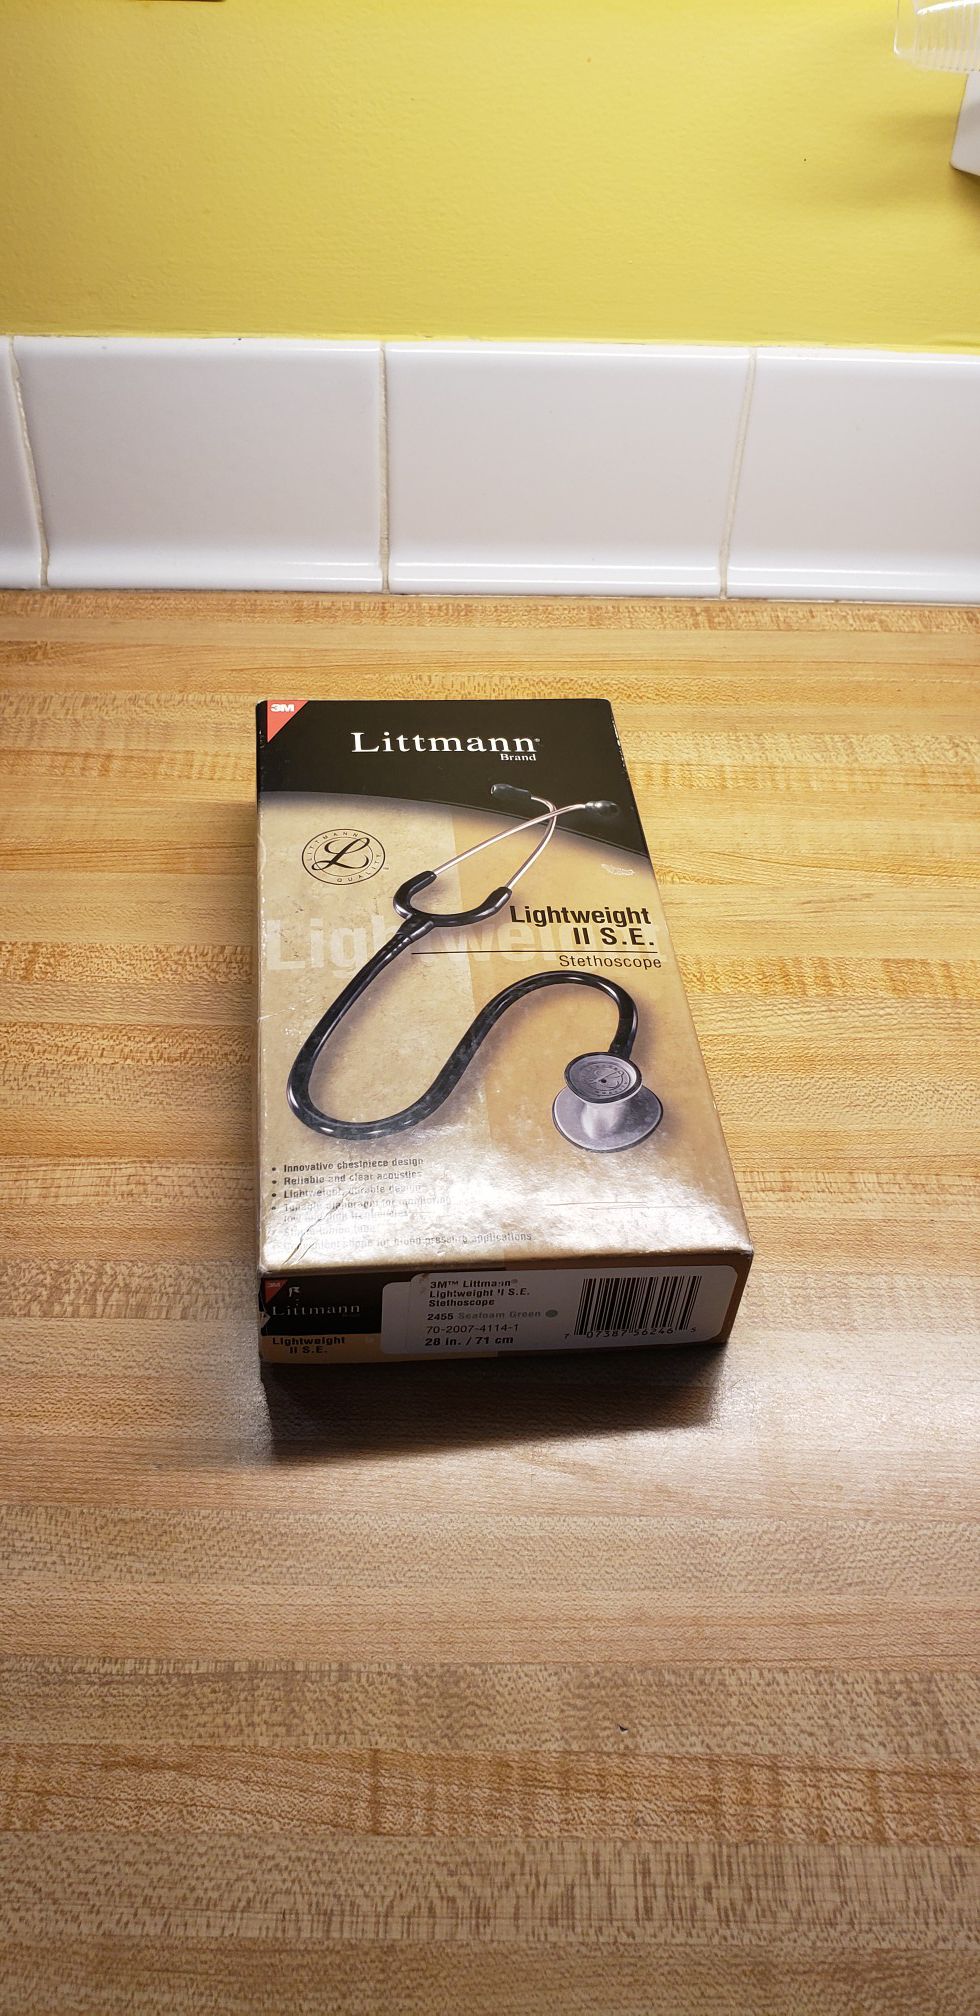 Littman lightweight 2 s.e. stethoscope